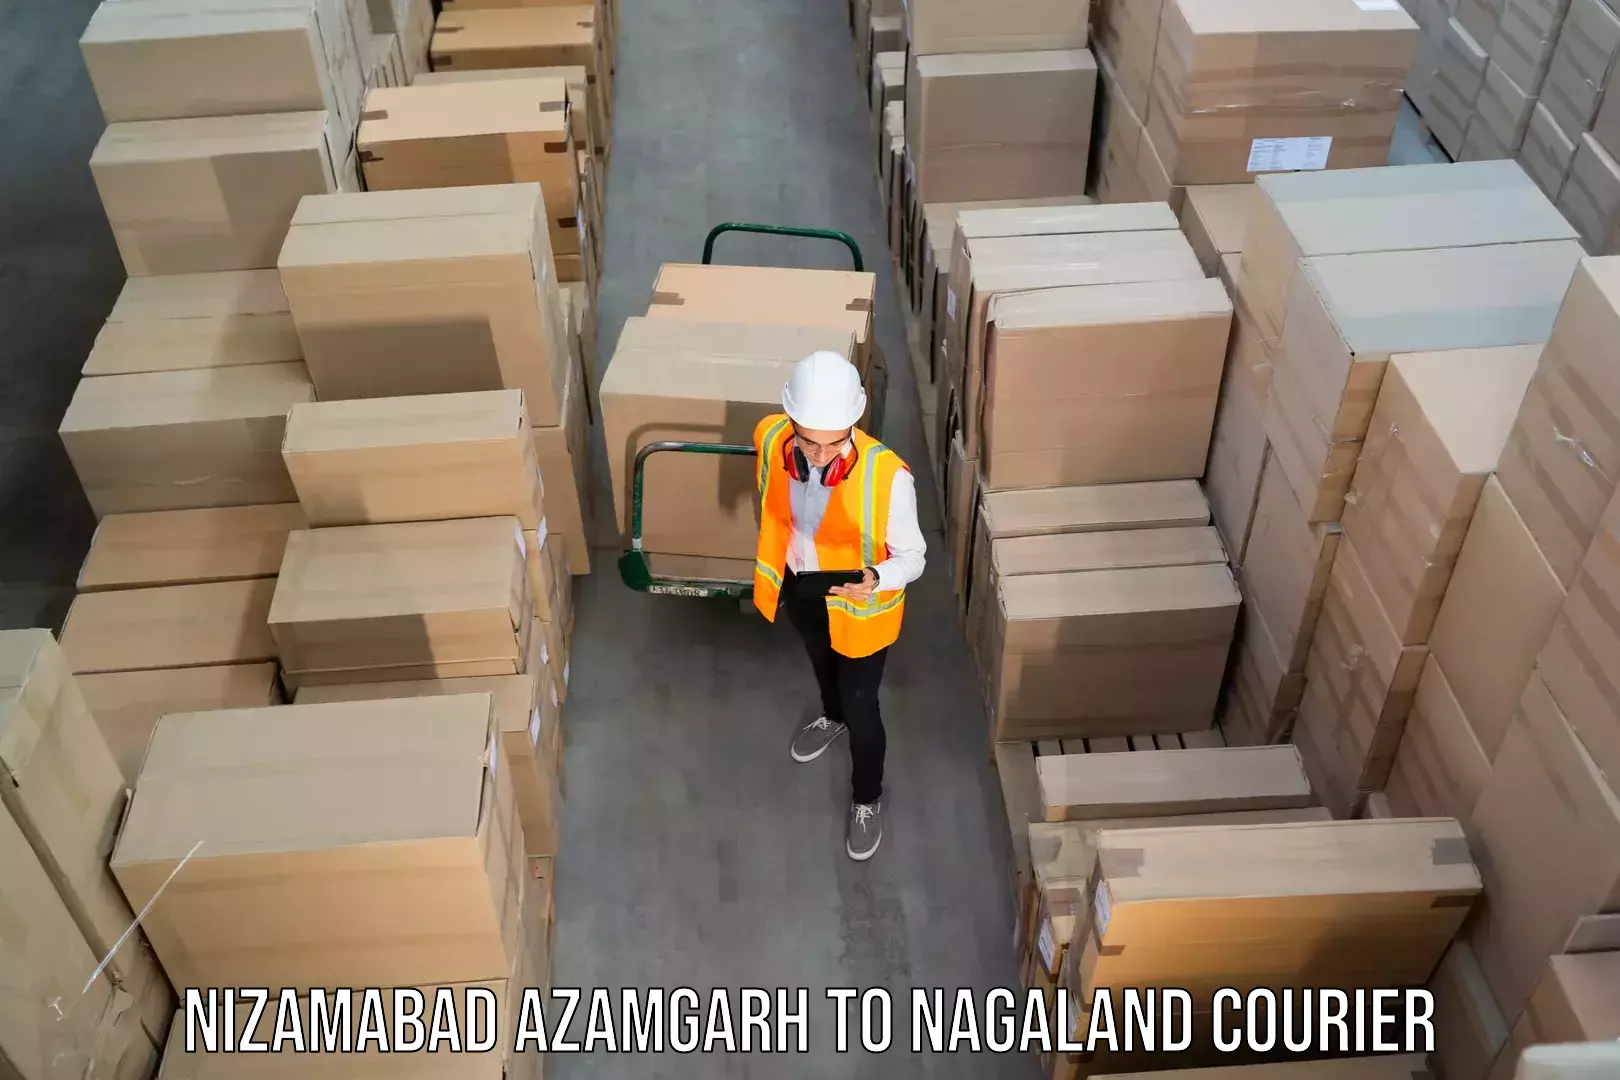 Full-service courier options Nizamabad Azamgarh to Kohima